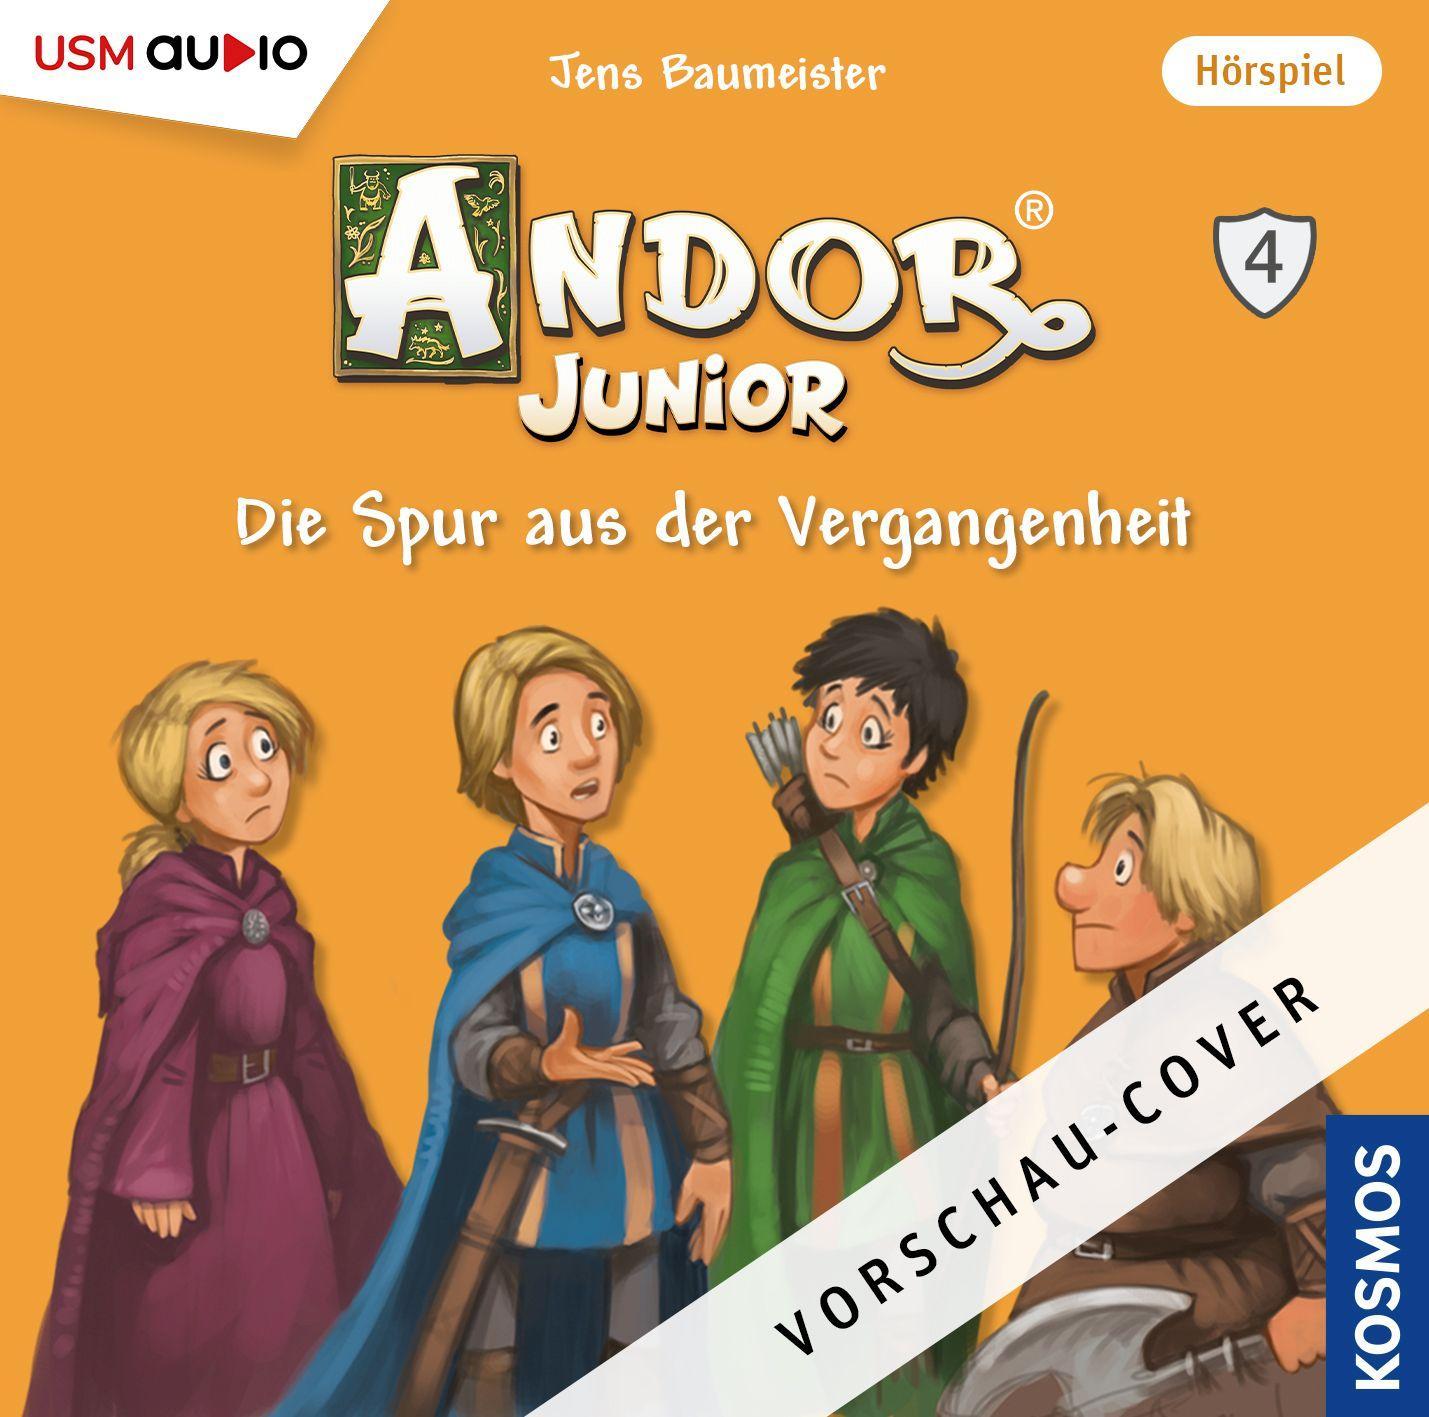 Audio Andor Junior (4) United Soft Media Verlag